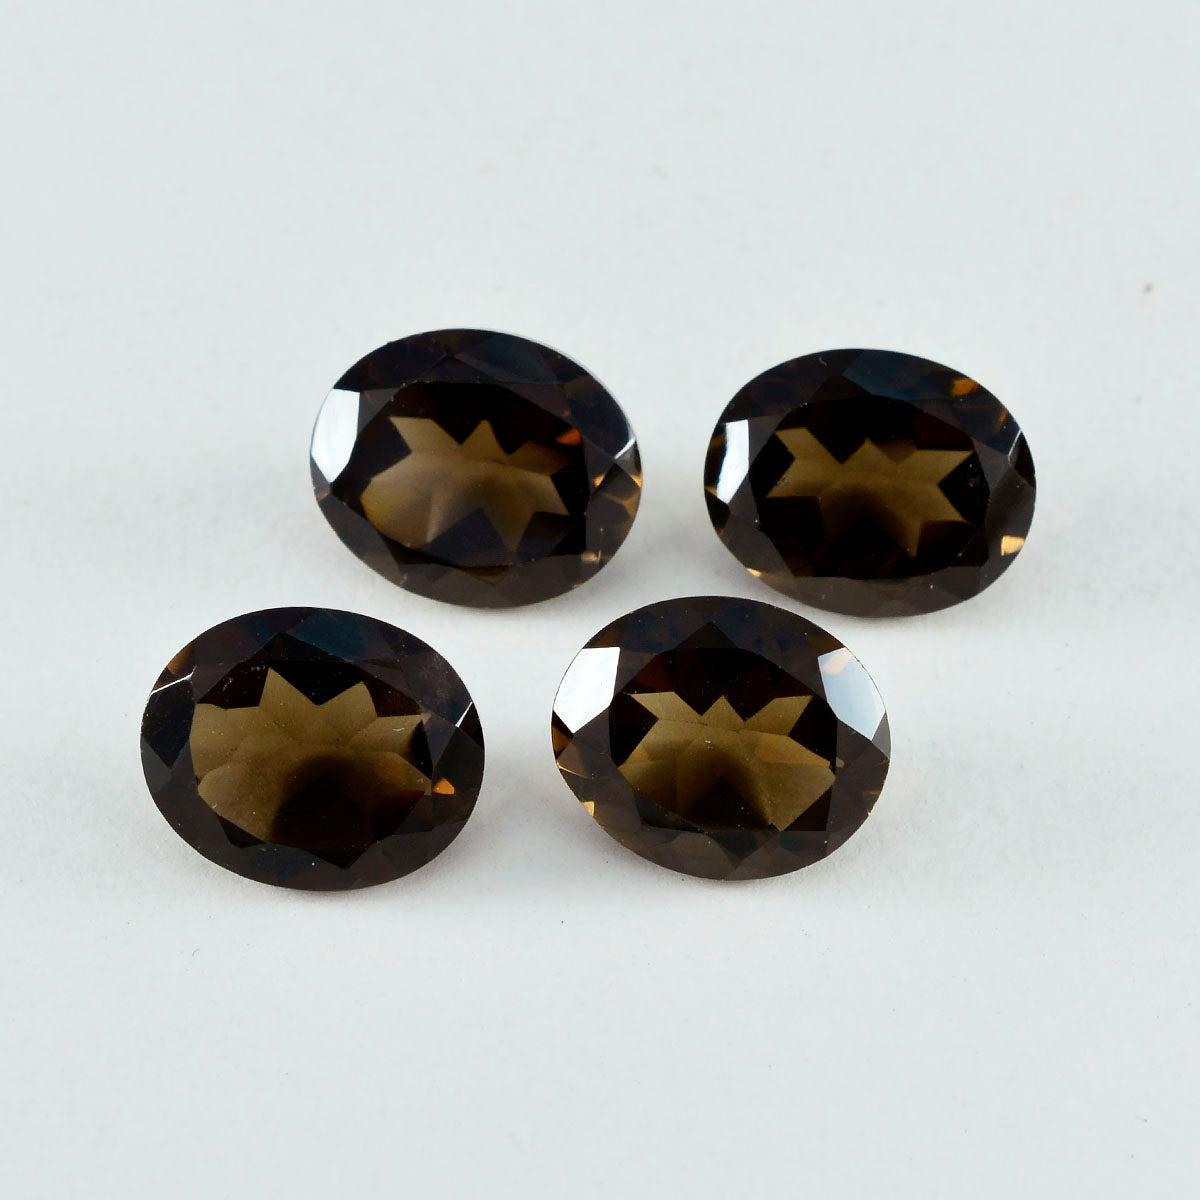 riyogems 1 шт., настоящий коричневый дымчатый кварц, ограненный 8x10 мм, овальной формы, красивое качество, россыпь драгоценных камней